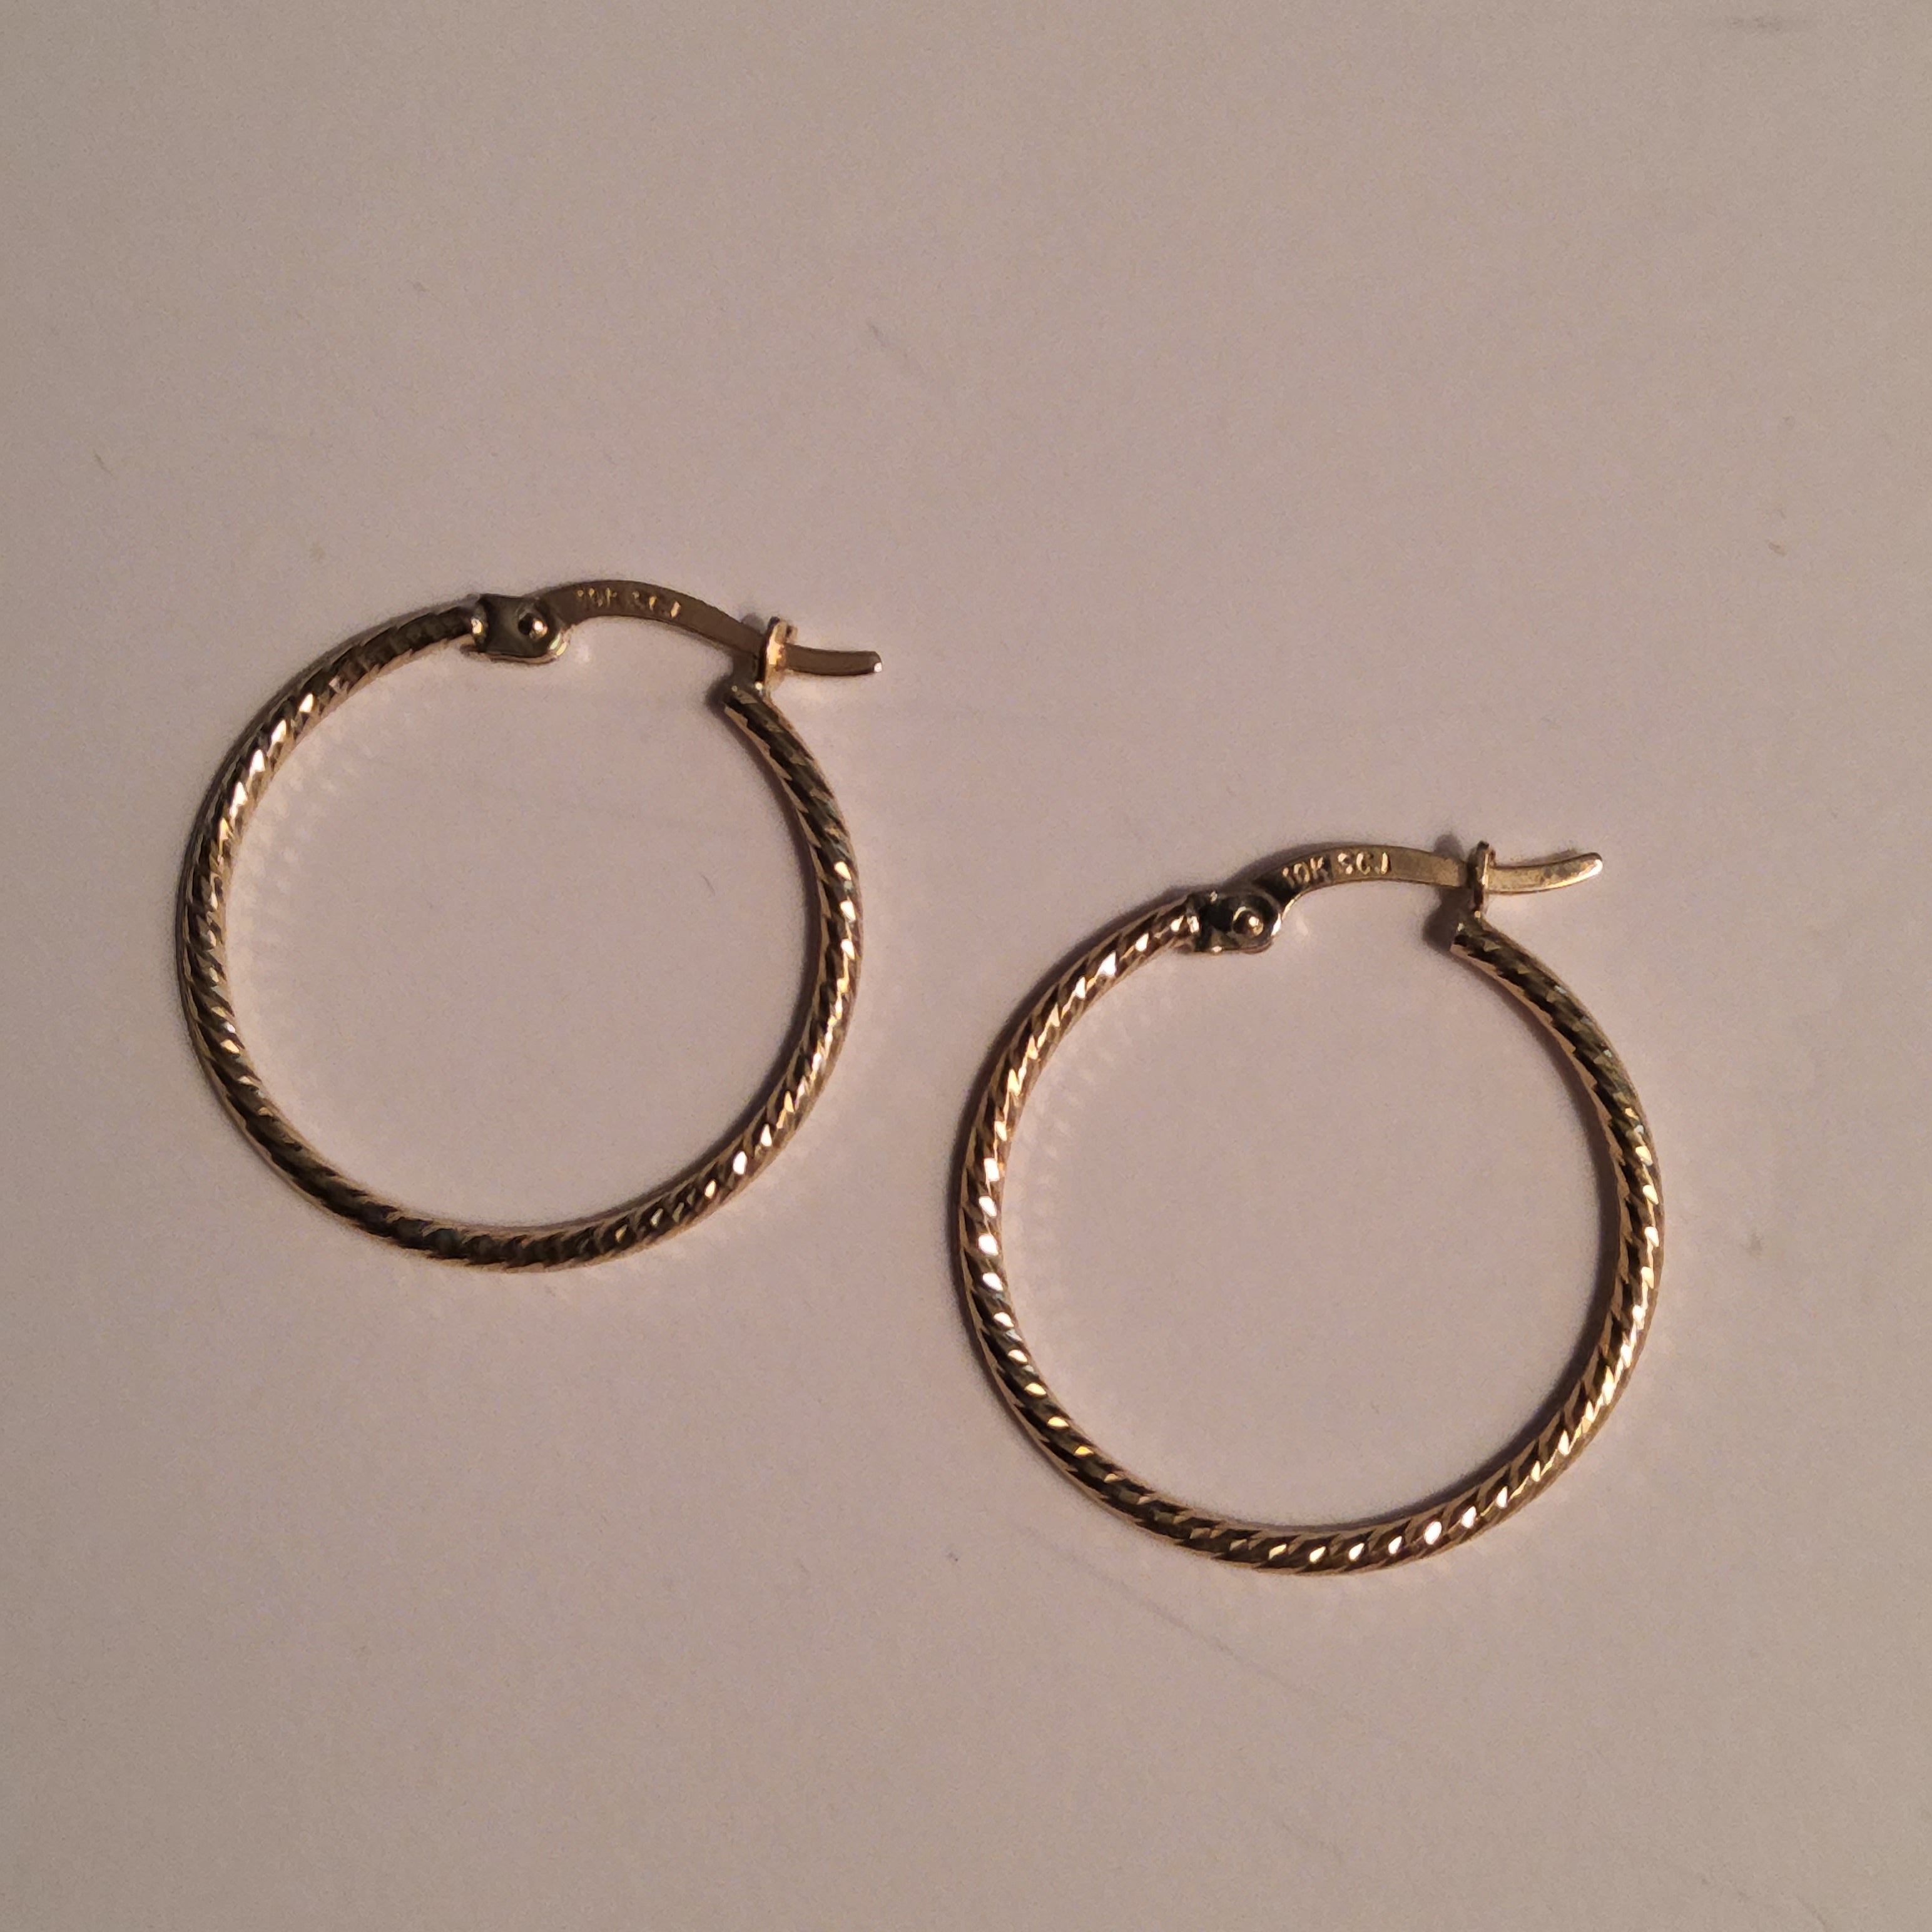 Gold Hoop Earrings 22mm